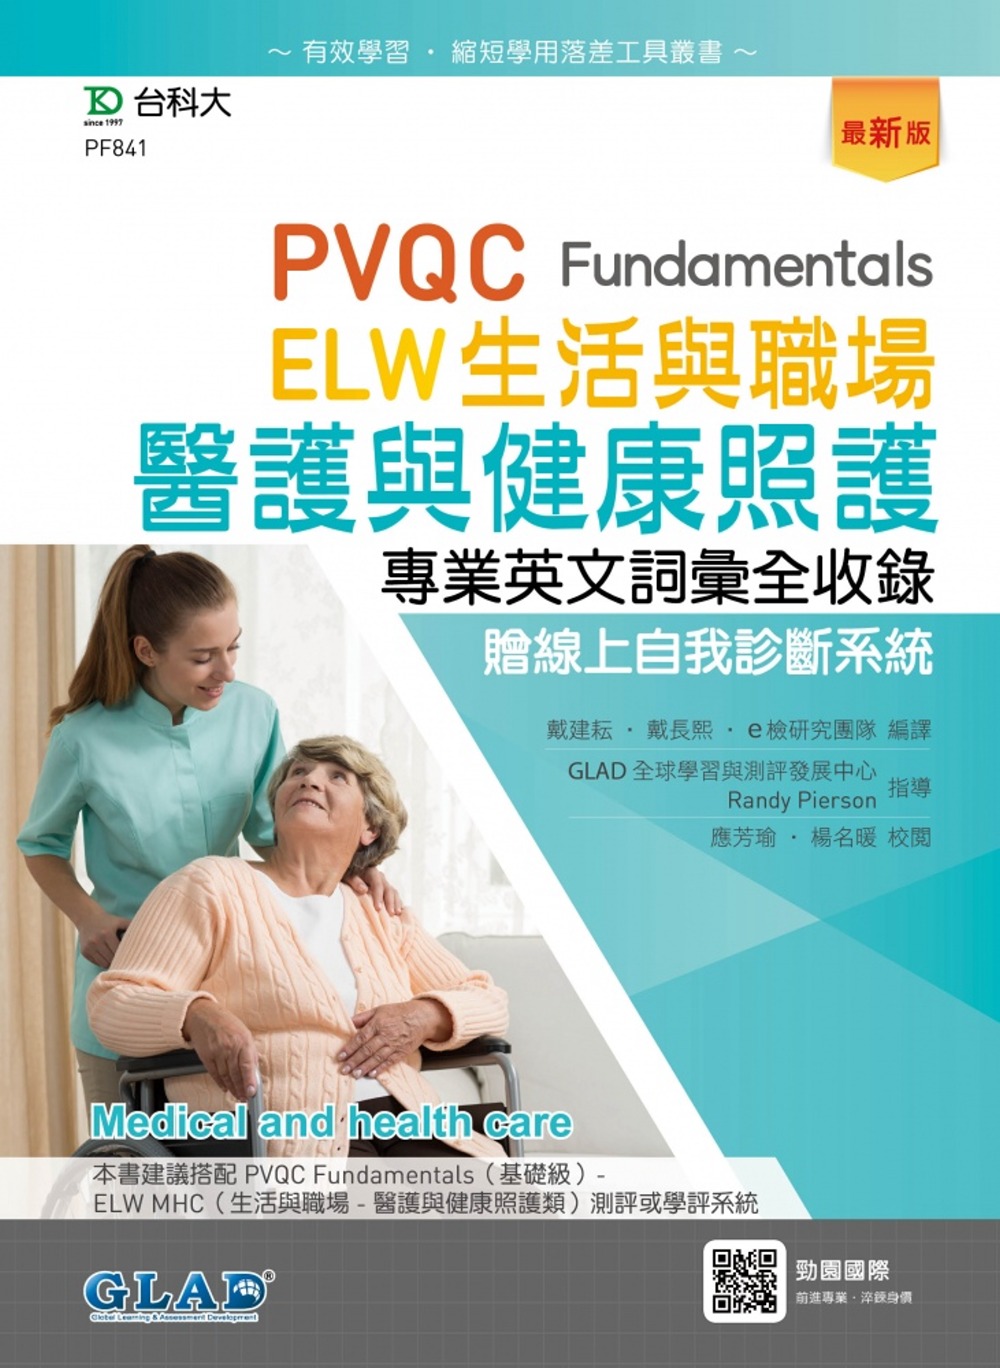 PVQC ELW 生活與職場：醫護與健康照護專業英文詞彙全收錄贈線上自我診斷系統(最新版)